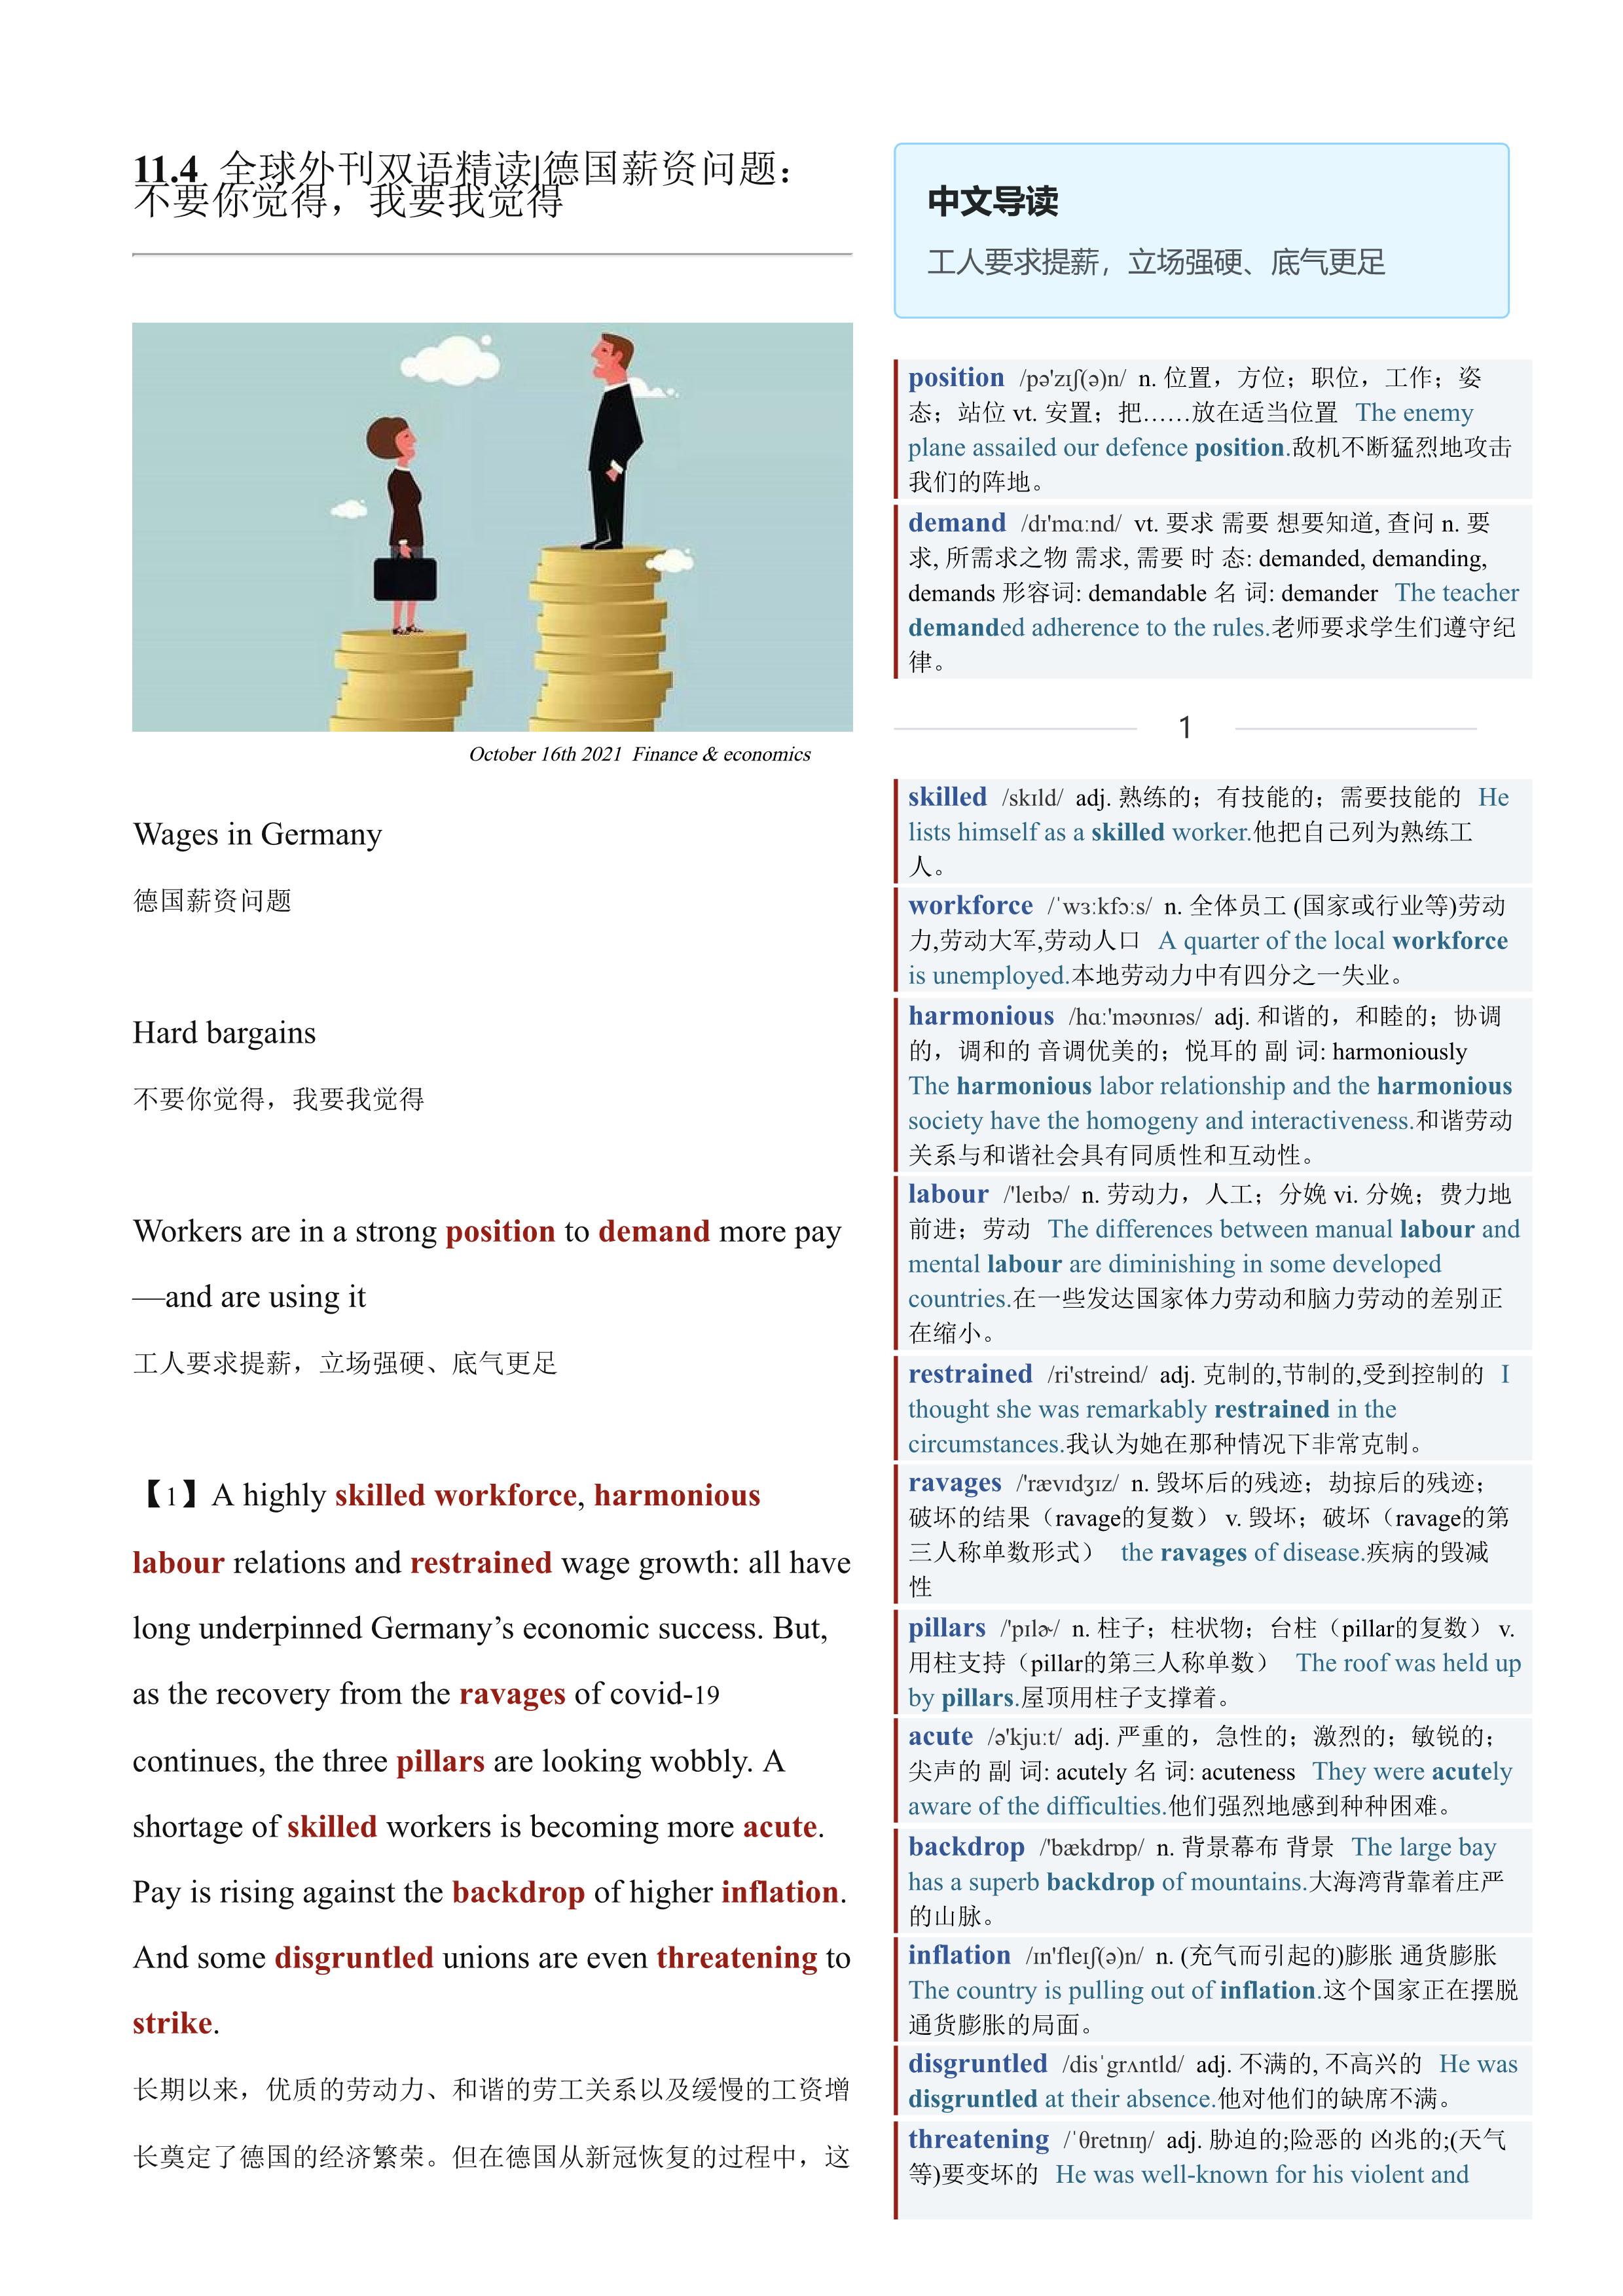 2021.11.04 经济学人双语精读丨德国薪资问题：不要你觉得，我要我觉得 (.PDF/DOC/MP3)